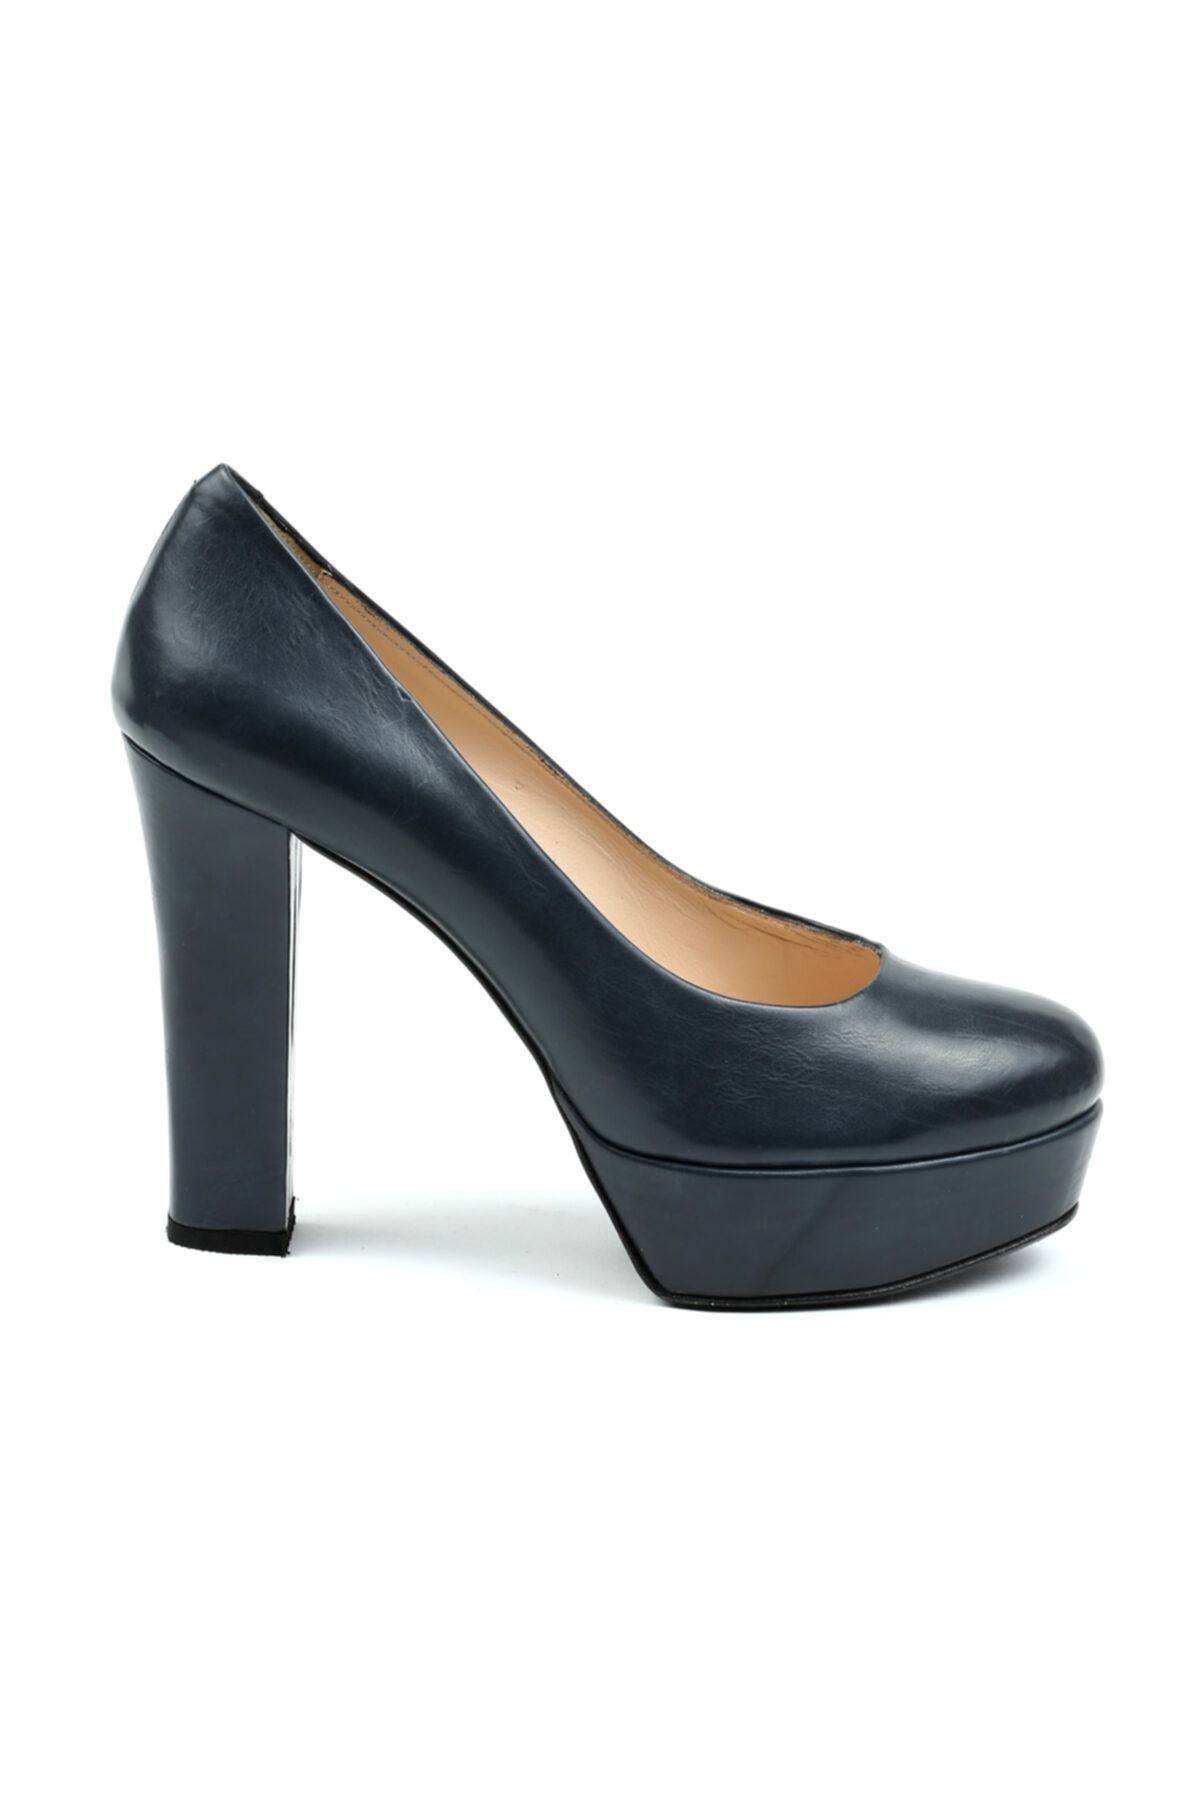 CANES AYAKKABI Kadın Lacivert Deri Klasik Yuvarlak Burun Kapalı Ayakkabı